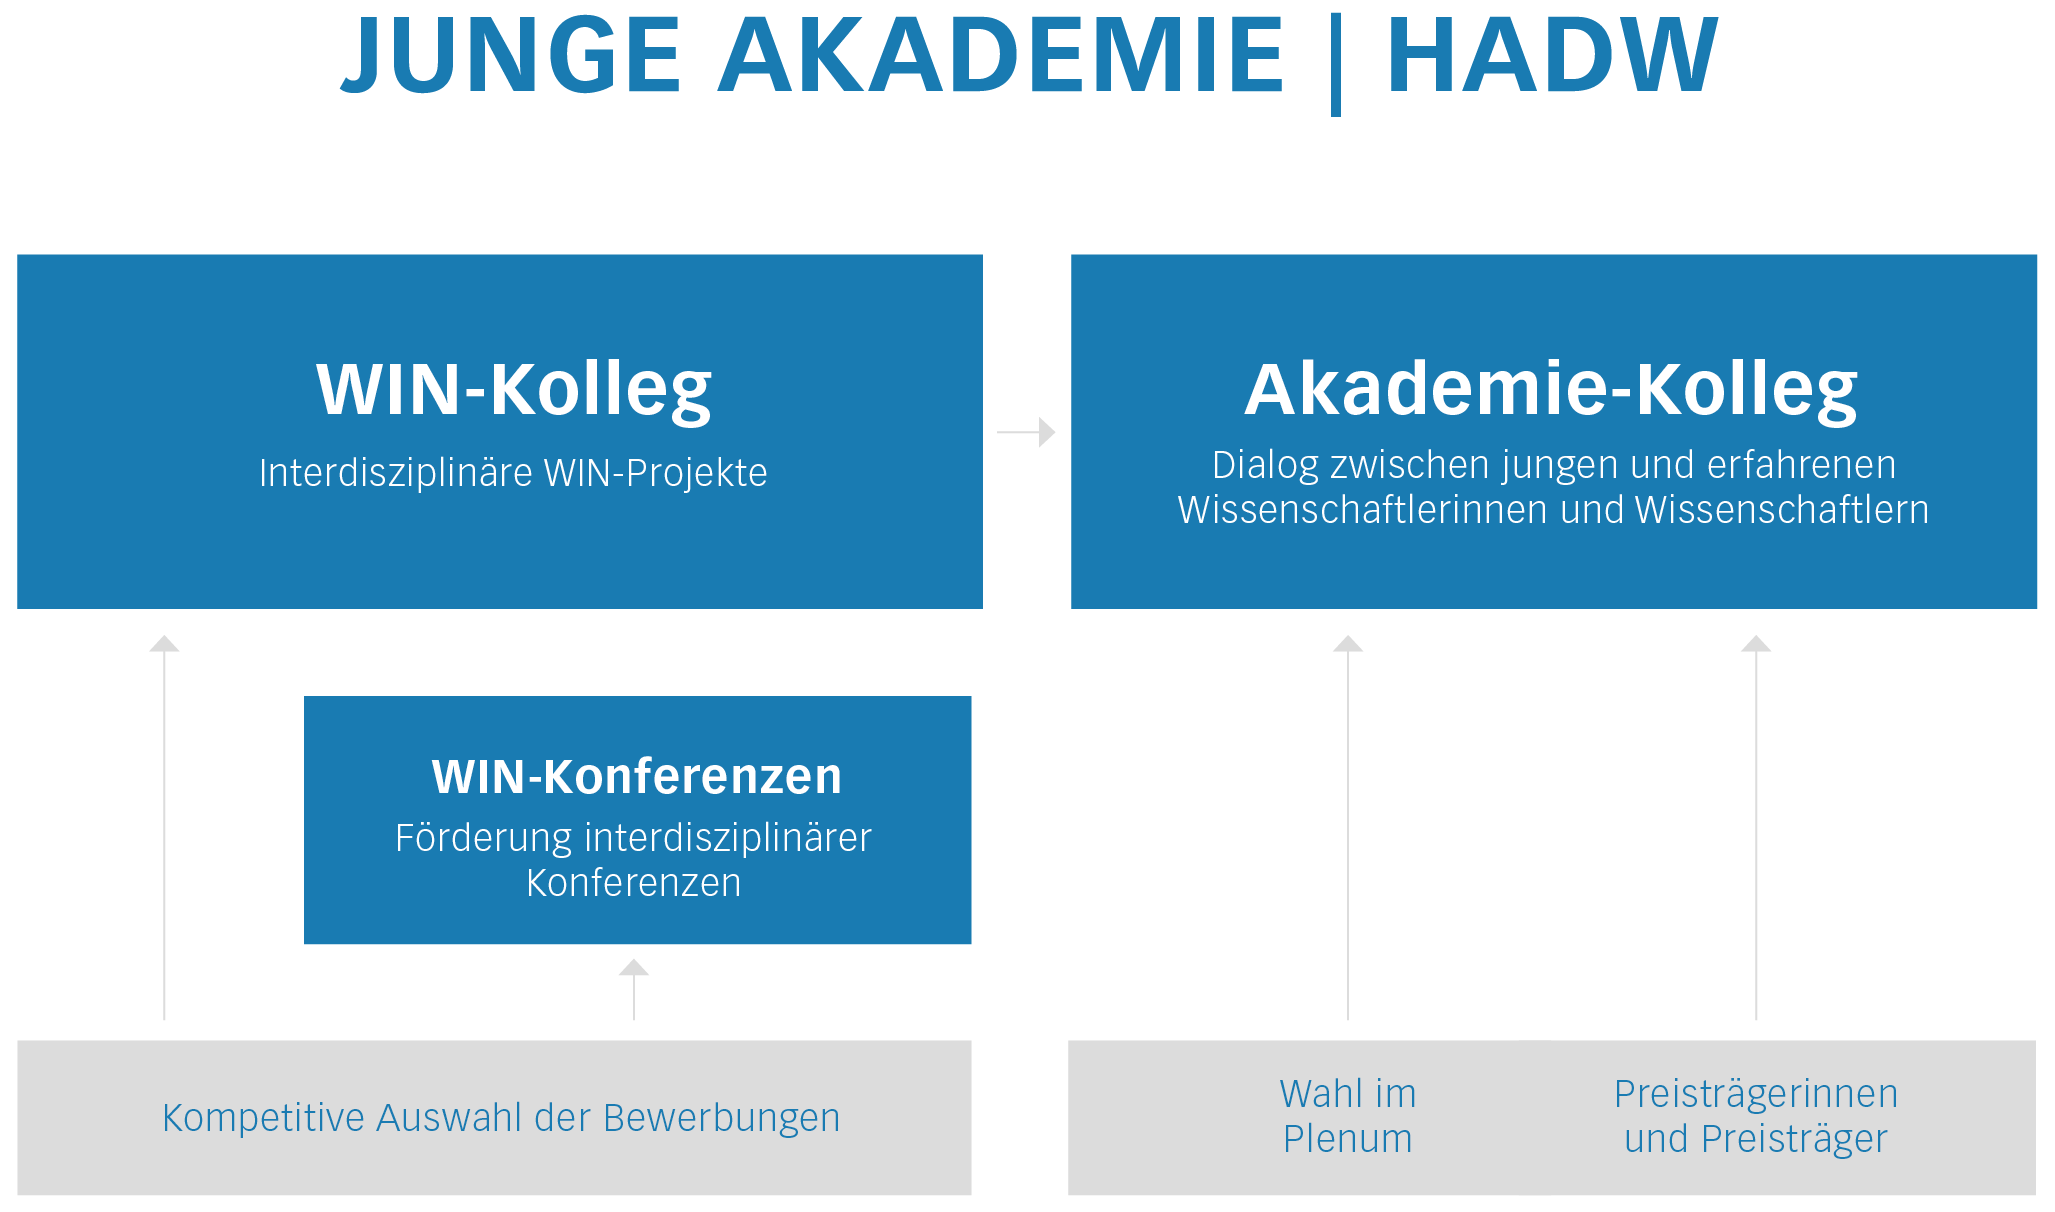 Grafik zum Aufbau der Jungen Akademie, die Hauptsäulen bilden das WIN-Kolleg und das Akademie-Kolleg, zum WIN-Kolleg gehören außerdem die WIN-Konferenzen